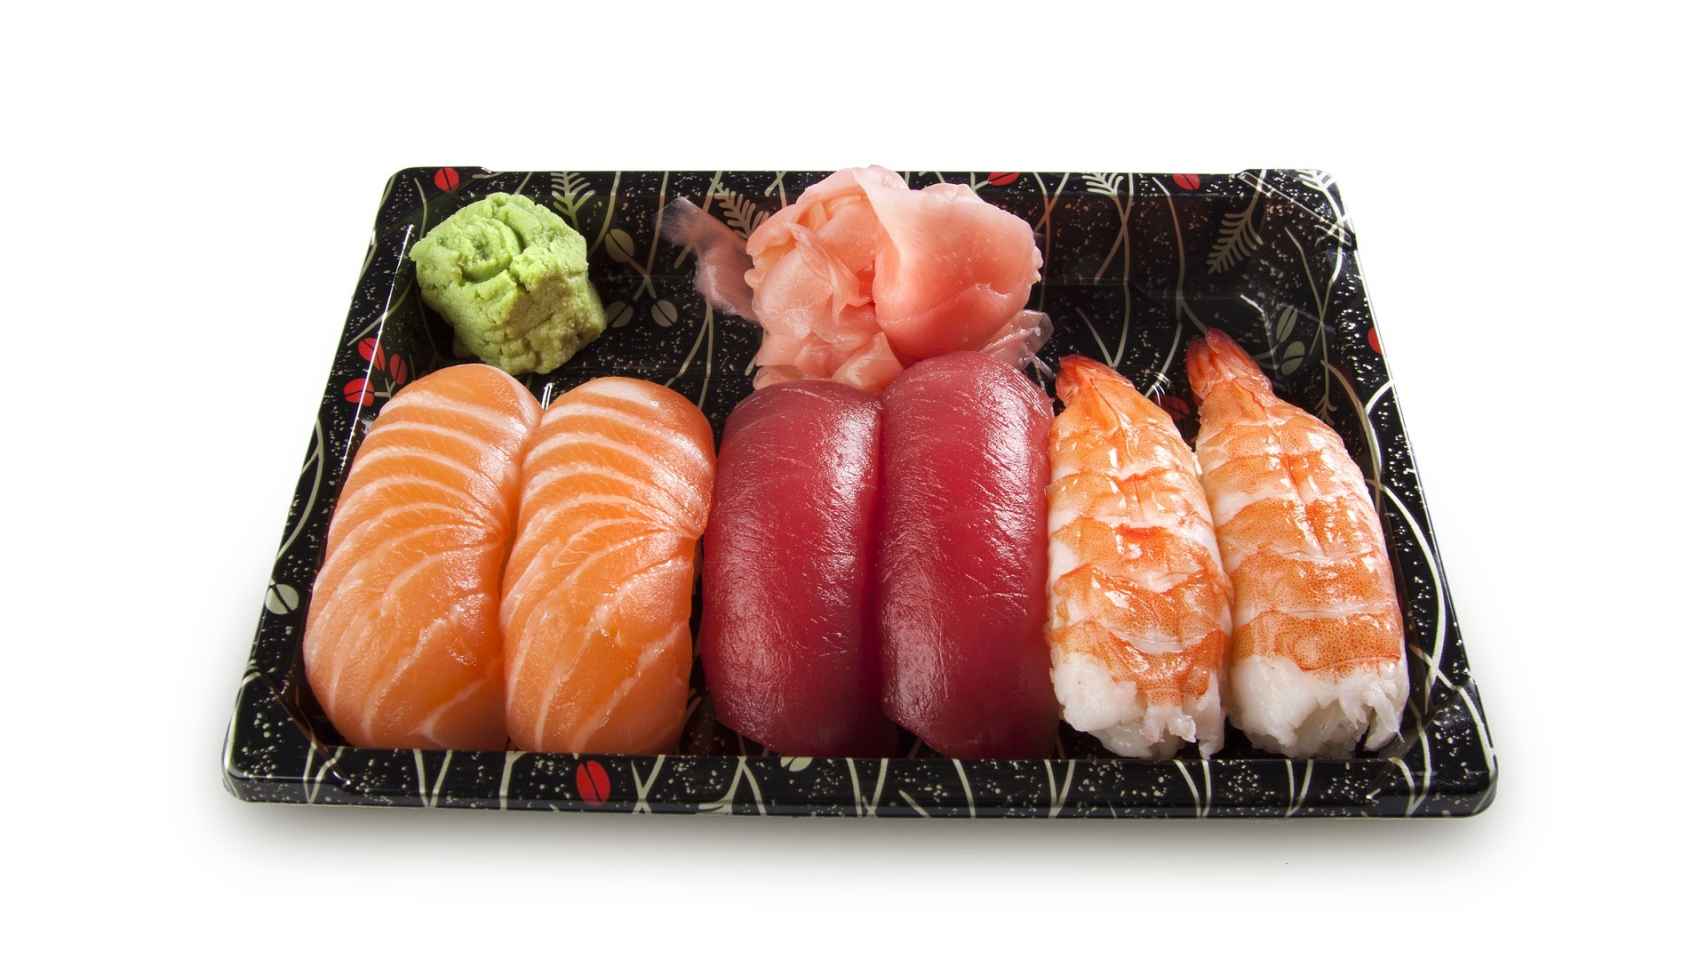 Salmón y wasabi, plato típico si viajas a cualquier ciudad de Japón.